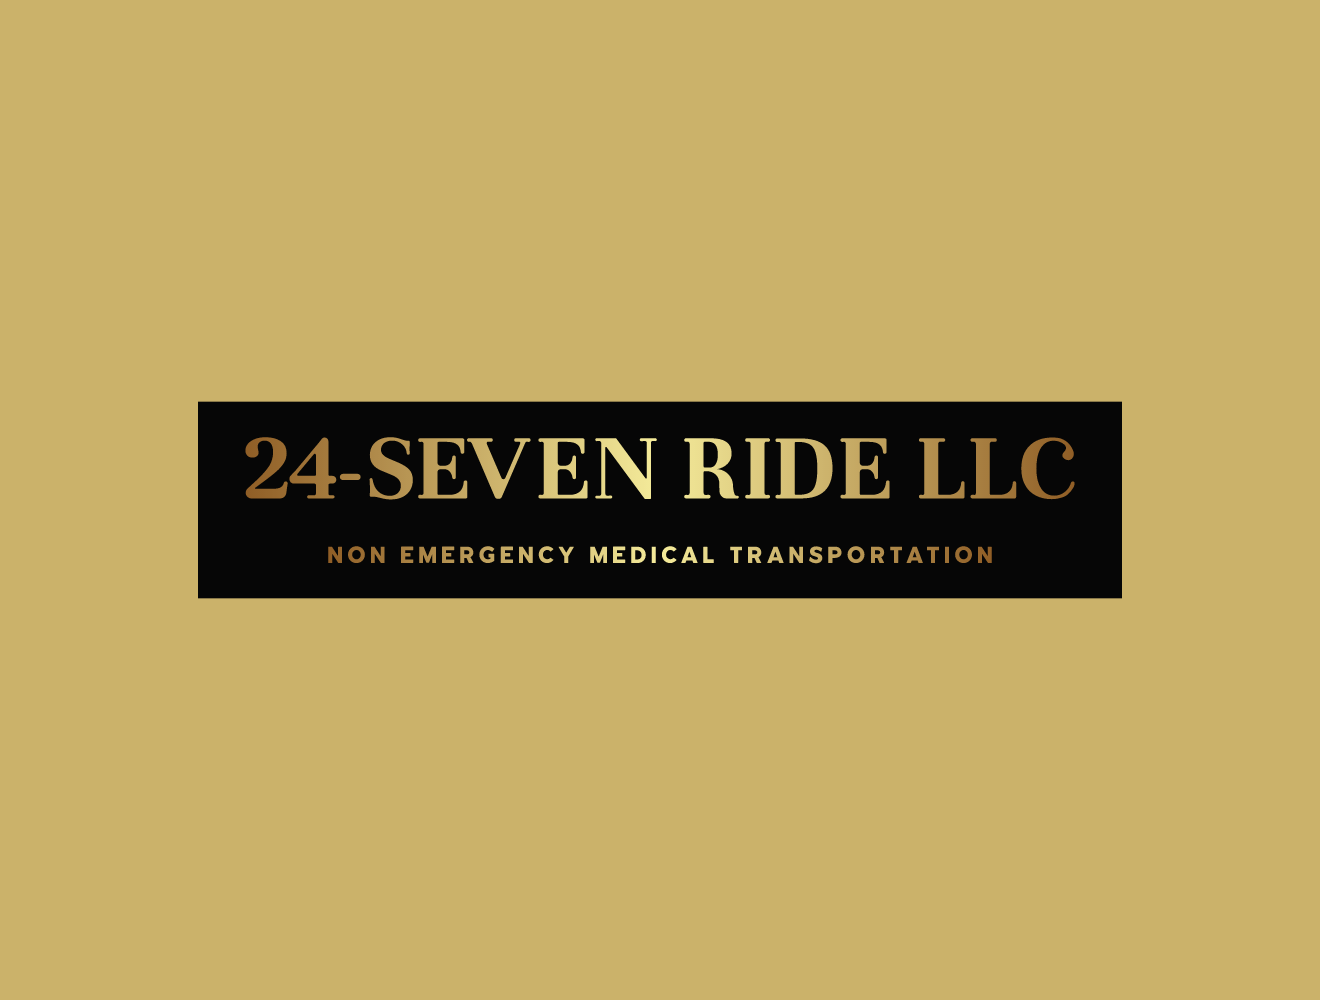 24-SEVEN RIDE LLC